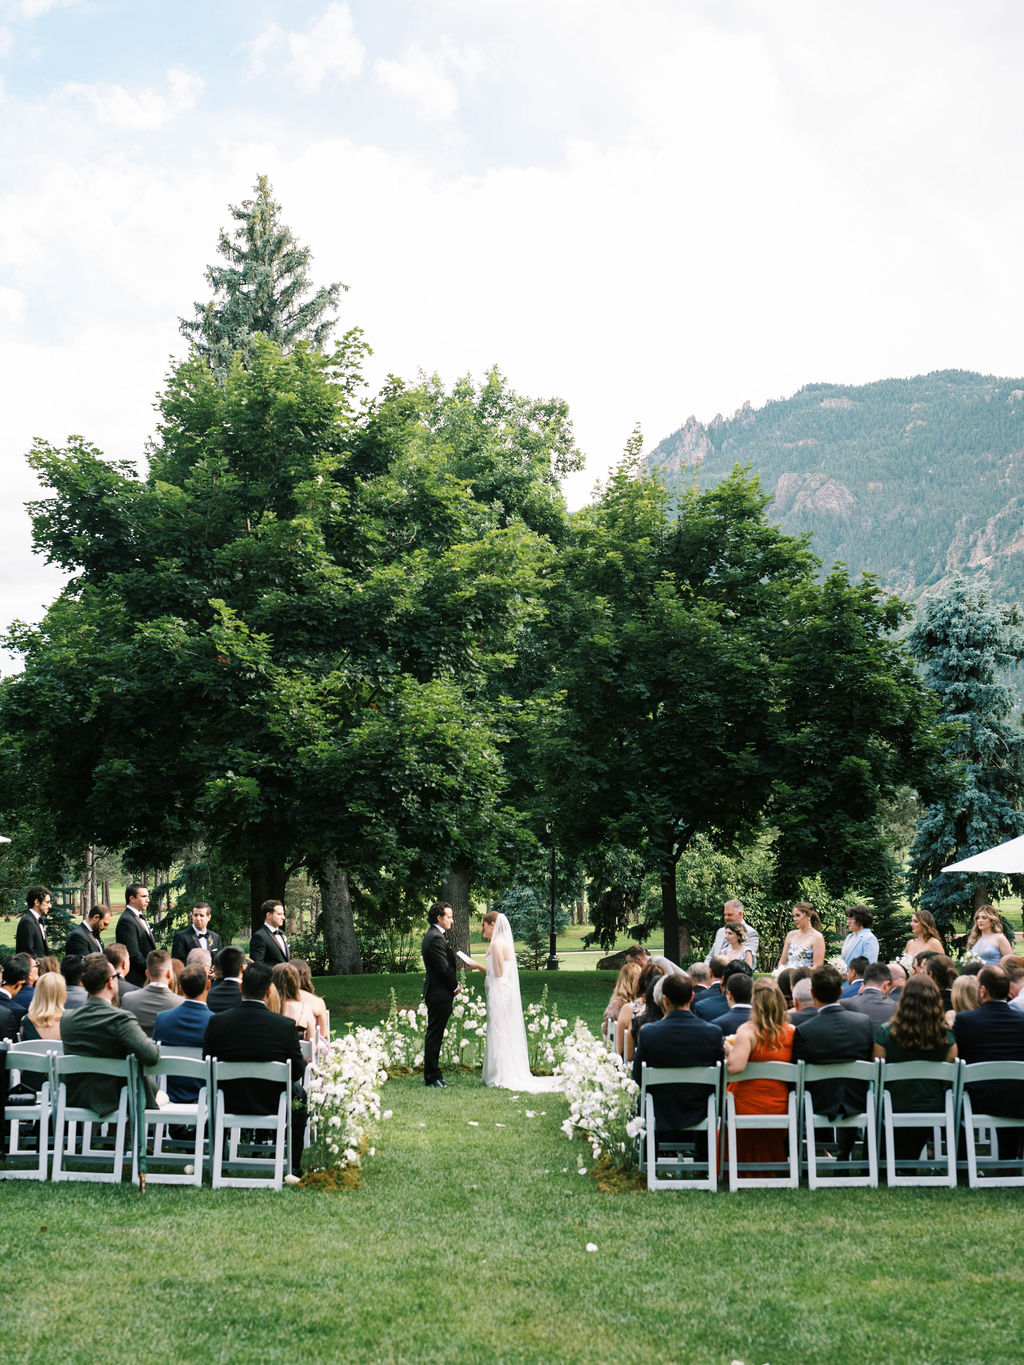 Best Colorado Wedding Venues, Top Colorado Wedding Venues, Jordan Gresham Photography, The Broadmoor